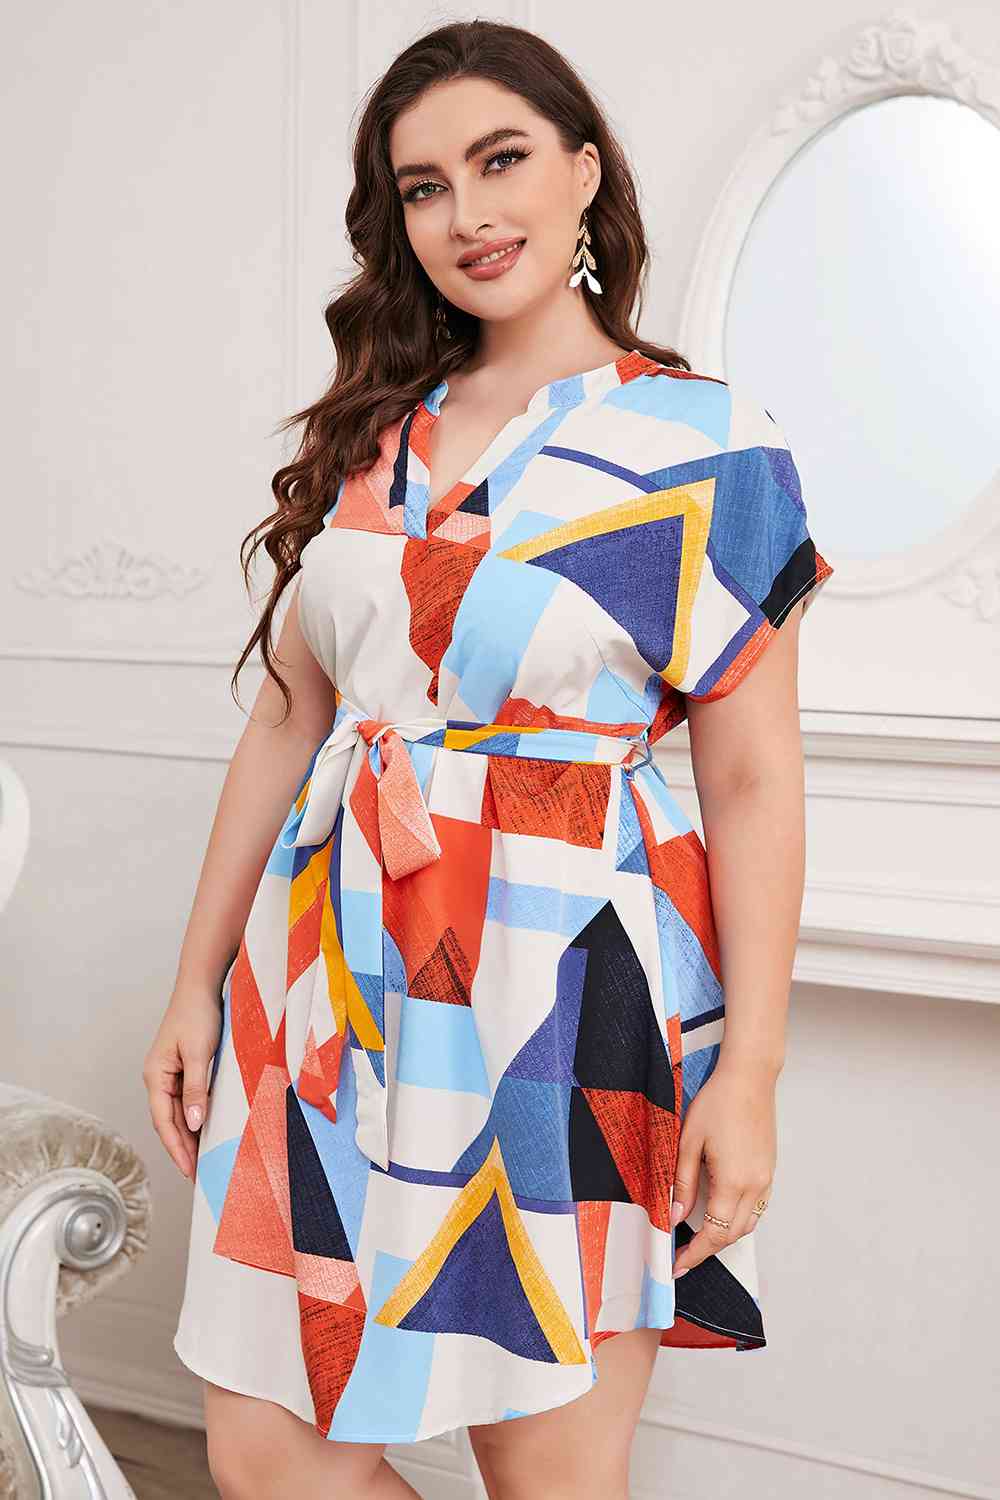 TEEK - Multicolor Plus Size Notched Neck Tie Waist Dress DRESS TEEK Trend   